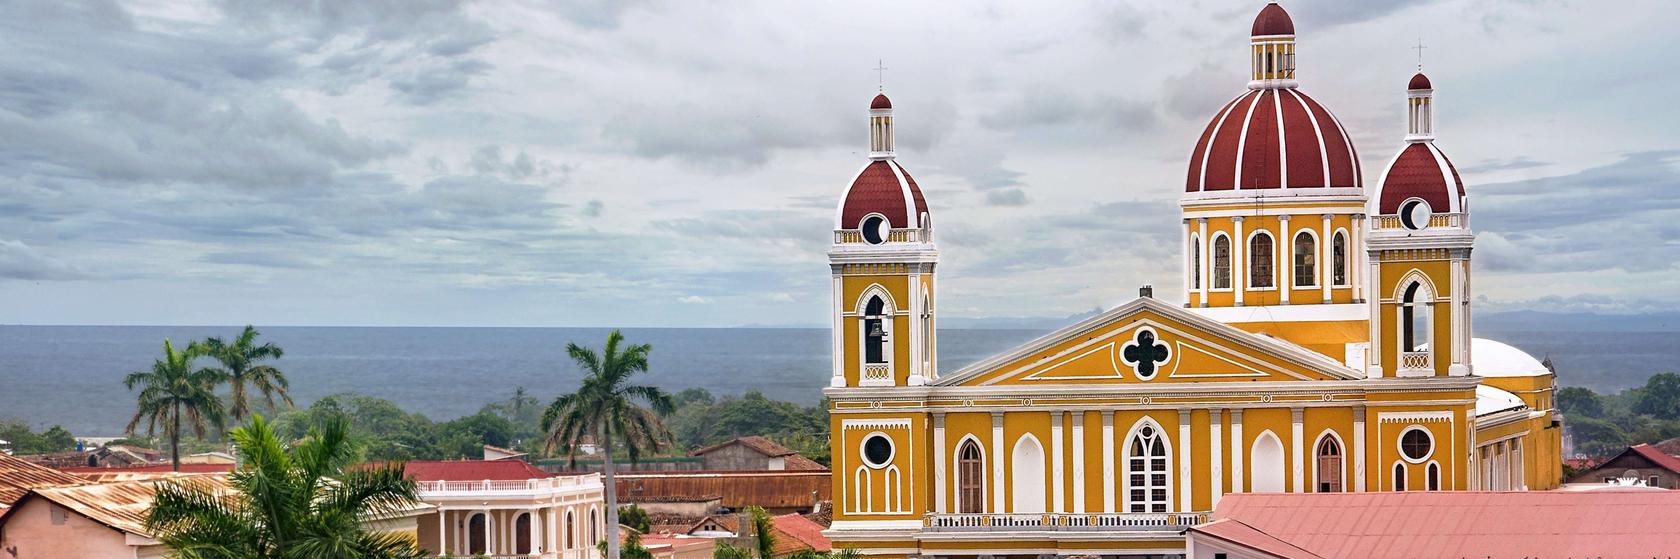 Dovolená Nikaragua